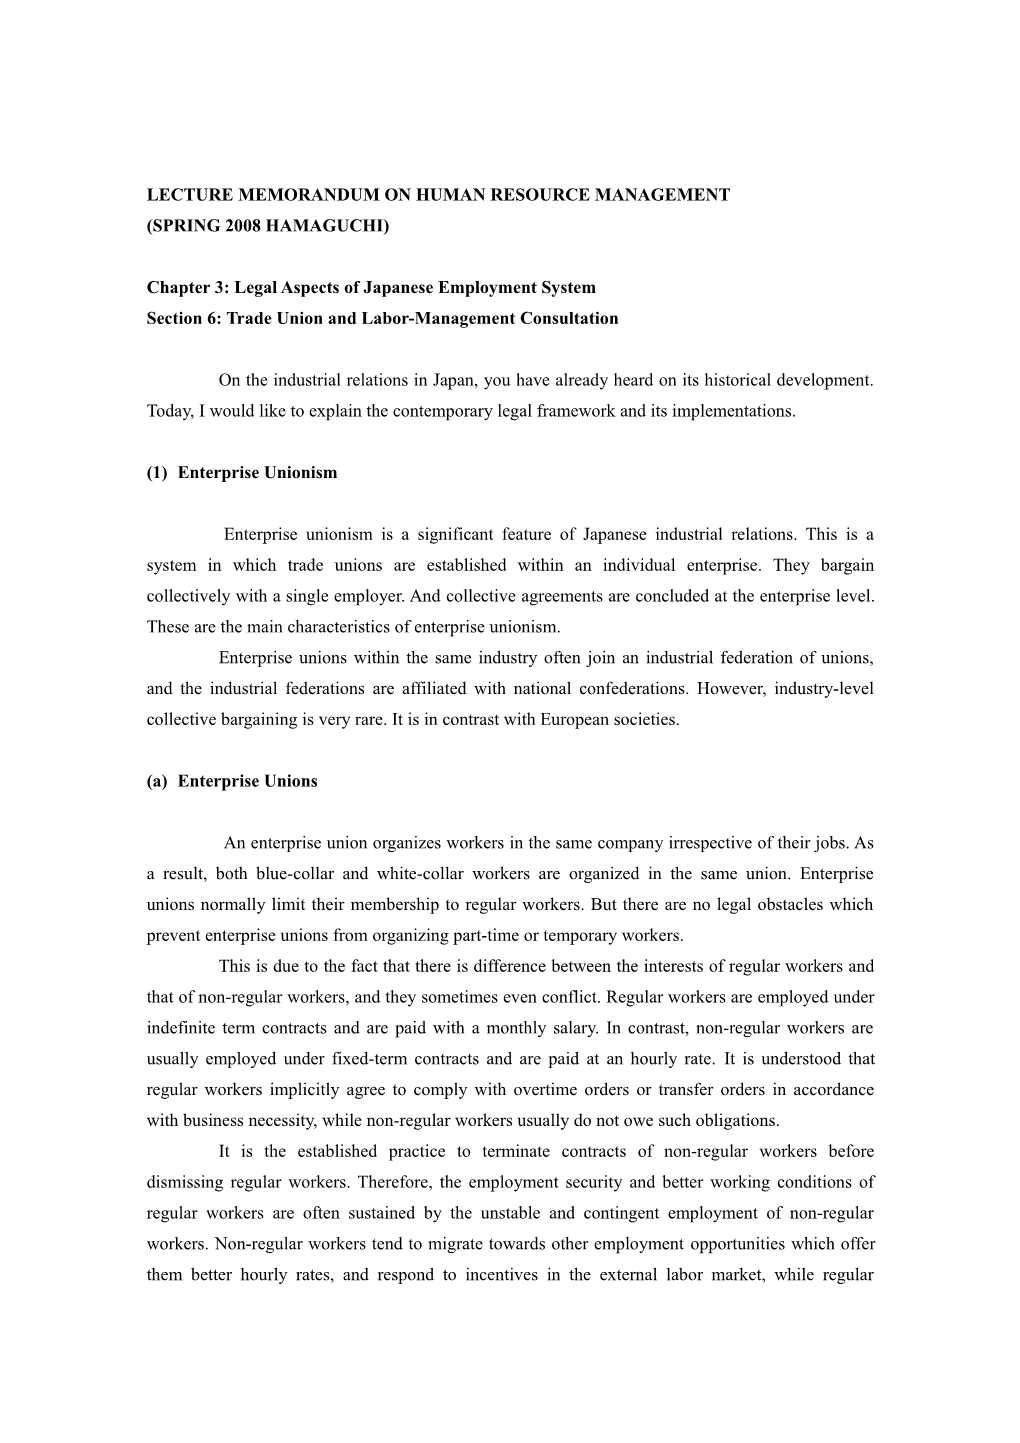 Lecture Memorandum on Labor Policy (Winter 2005)